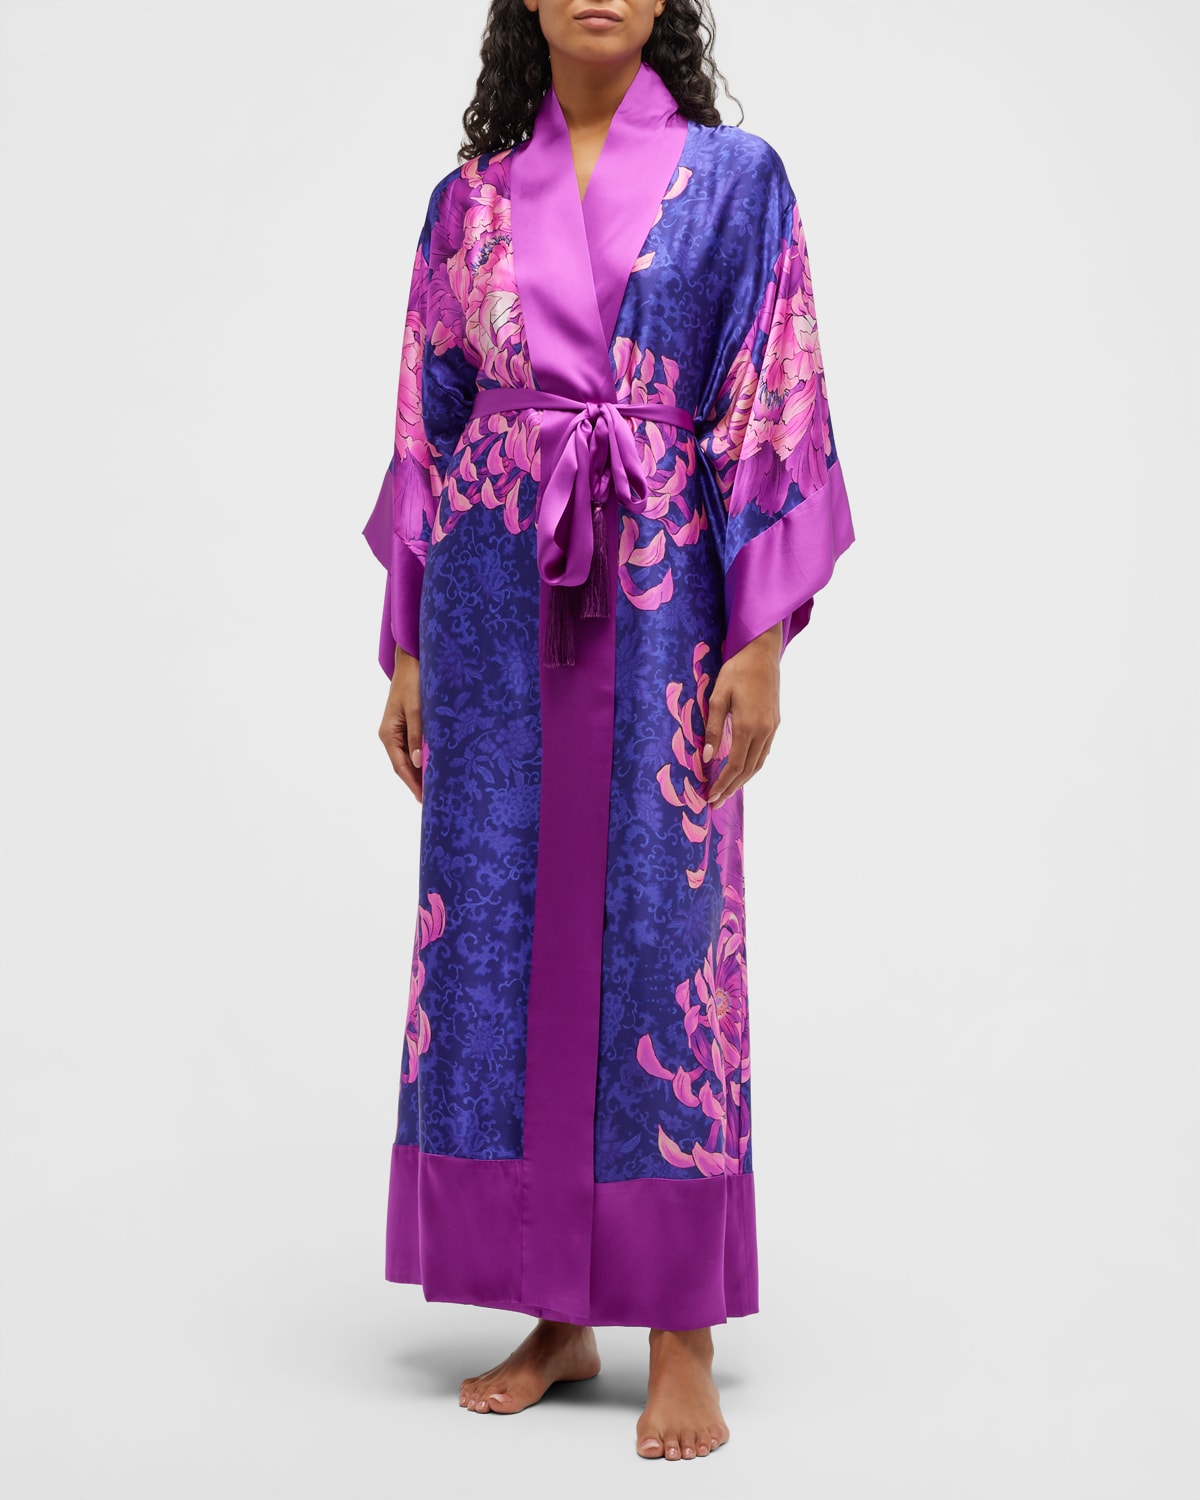 Josie Natori Sumida Floral-Print Tassel Silk Robe